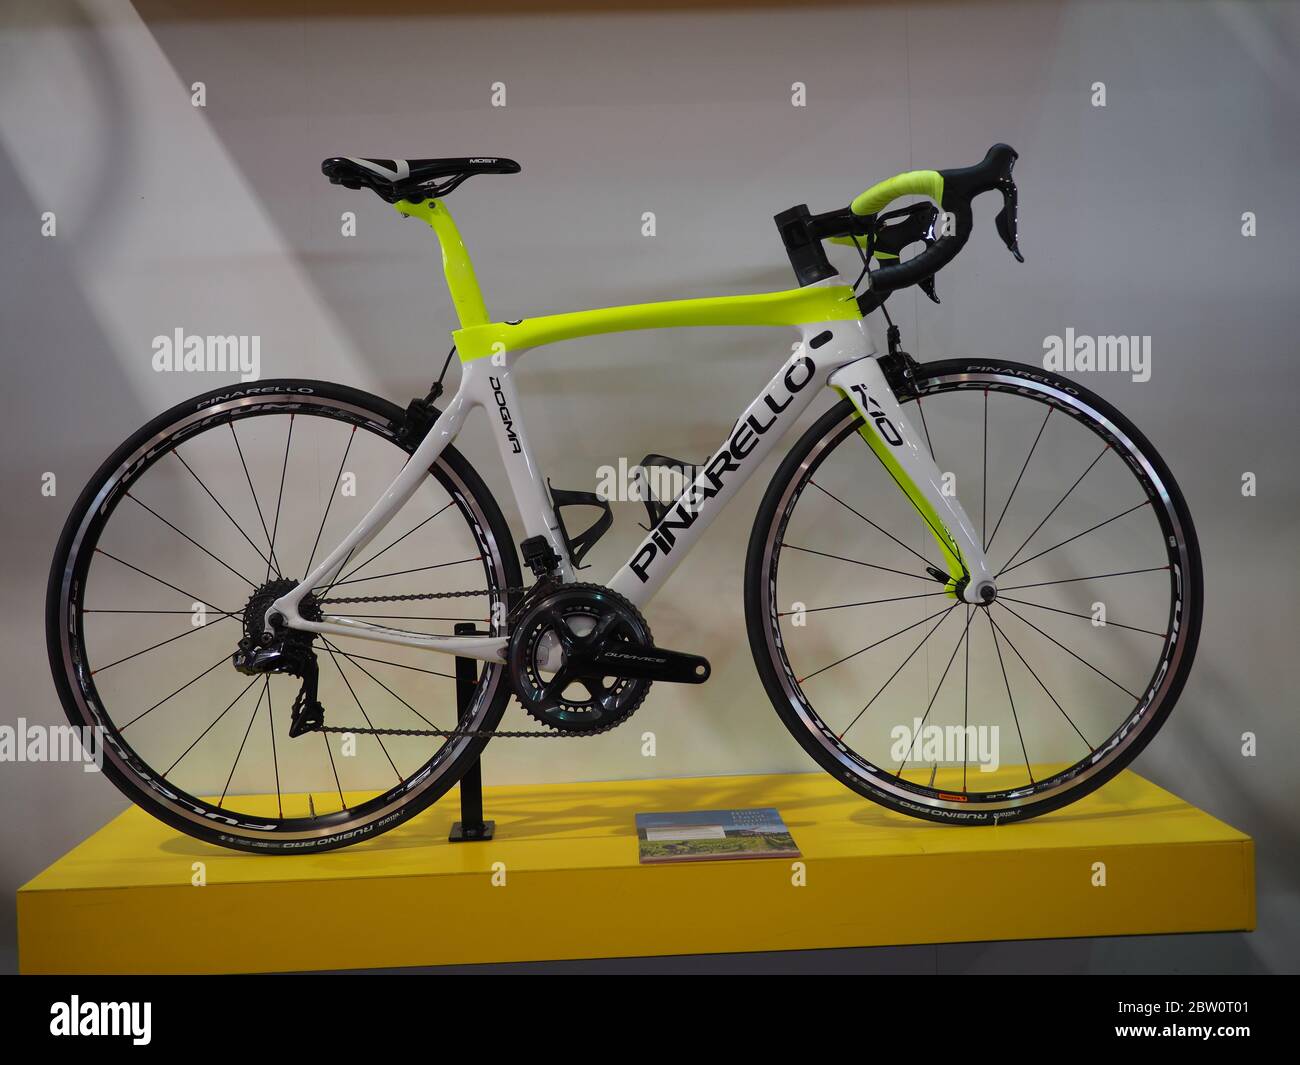 modern lightweight carbon fiber racing bicycle Stock Photo